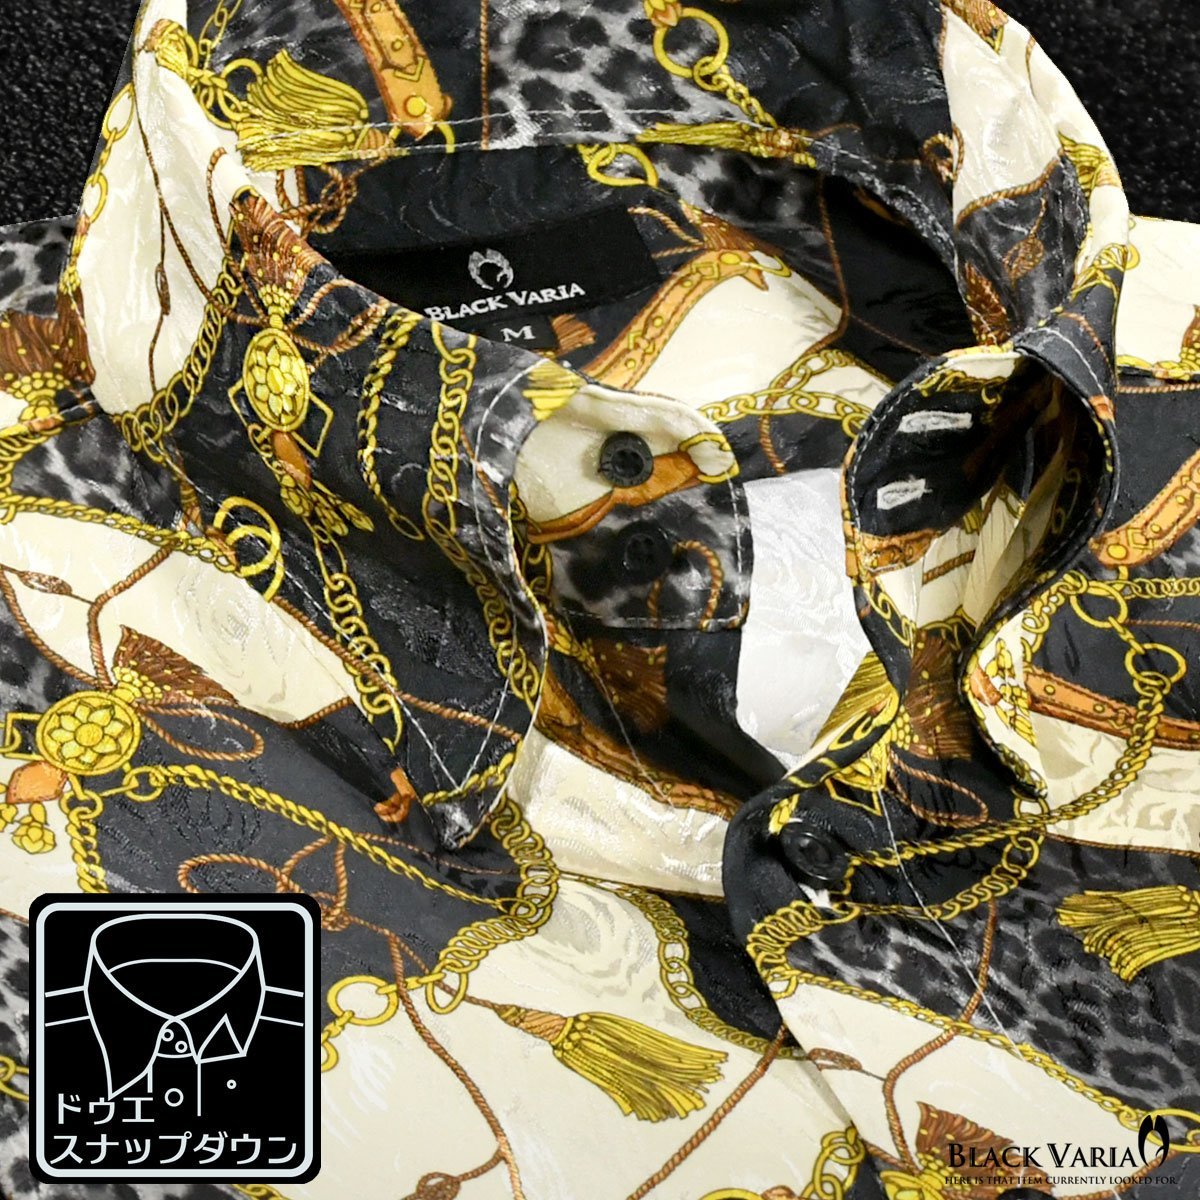 181718-gobk BLACK VARIA ドゥエボットーニ 豹×鎖スカーフ柄 スナップダウン ジャガードドレスシャツ メンズ(ゴールド金ブラック黒) M